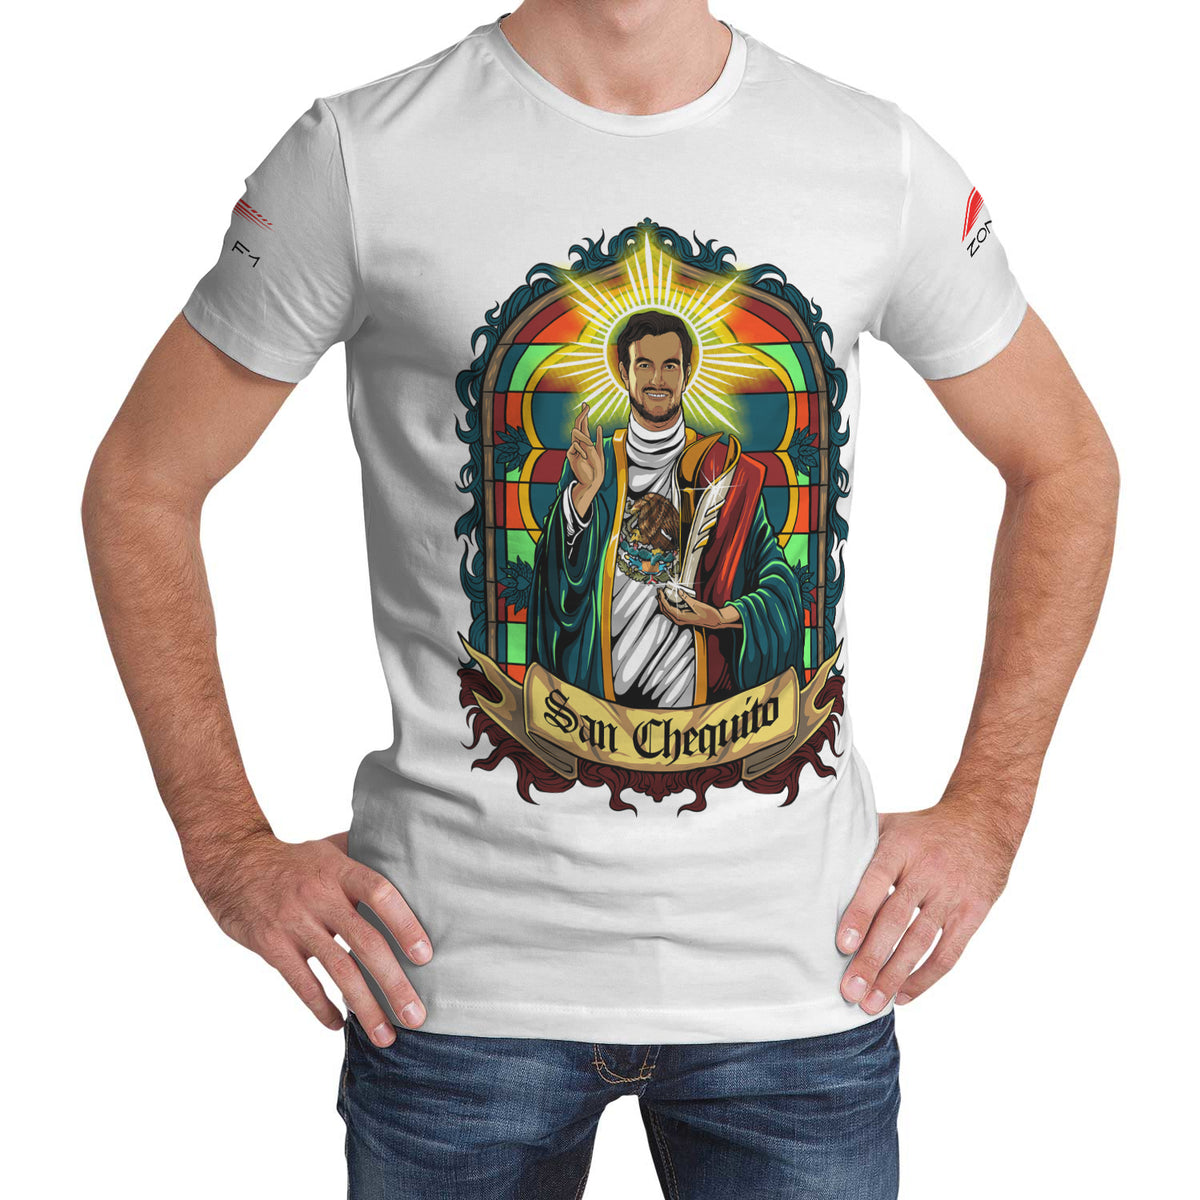 Camiseta AOP - San Chequito Opulent